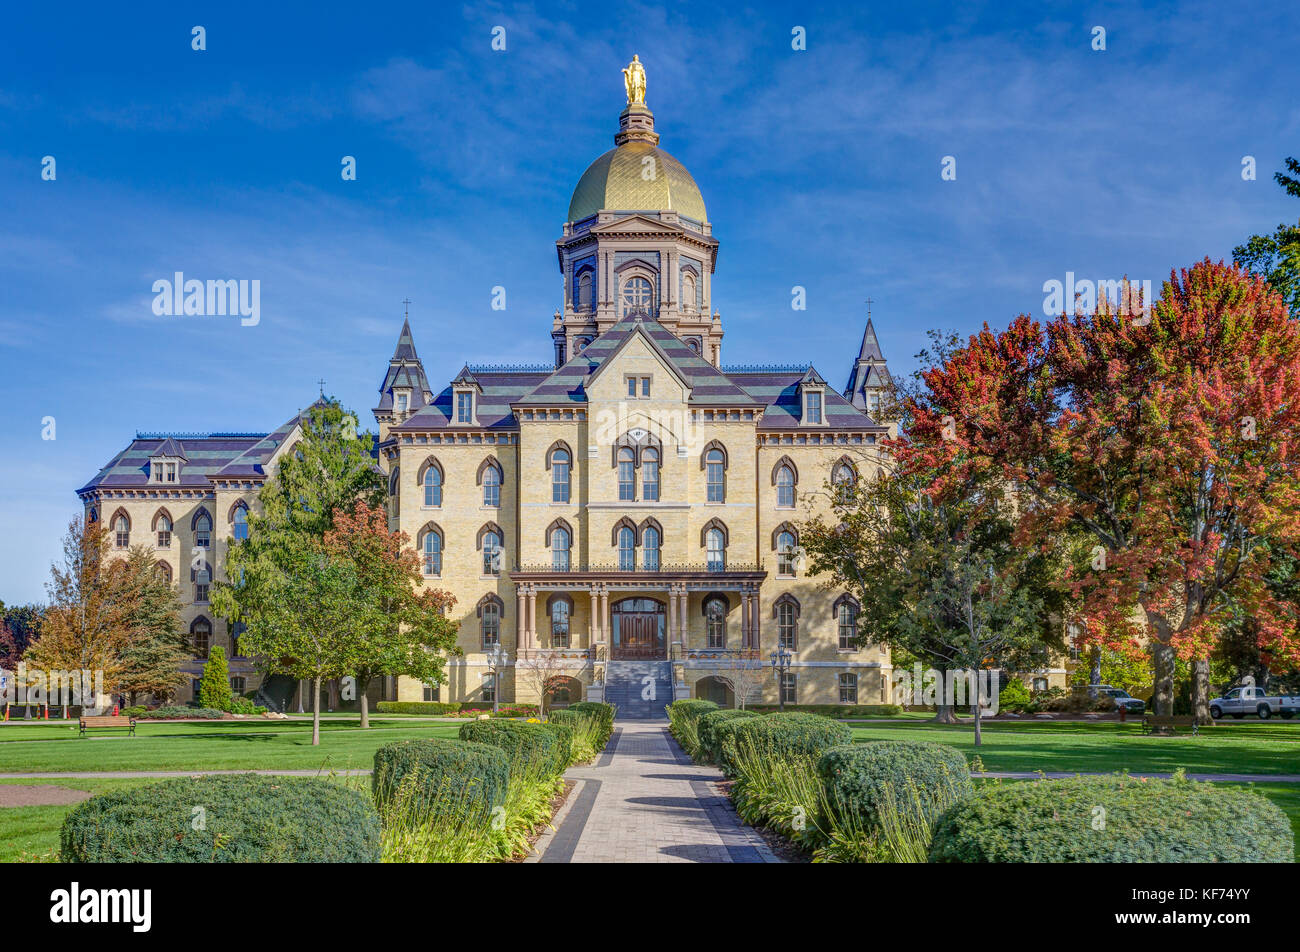 NOTRE DAME, IN/USA - Oktober 19, 2017: Hauptverwaltung Gebäude wie das "Goldene Kuppel" bekannt auf dem Campus der Universität von Notre Dame. Stockfoto